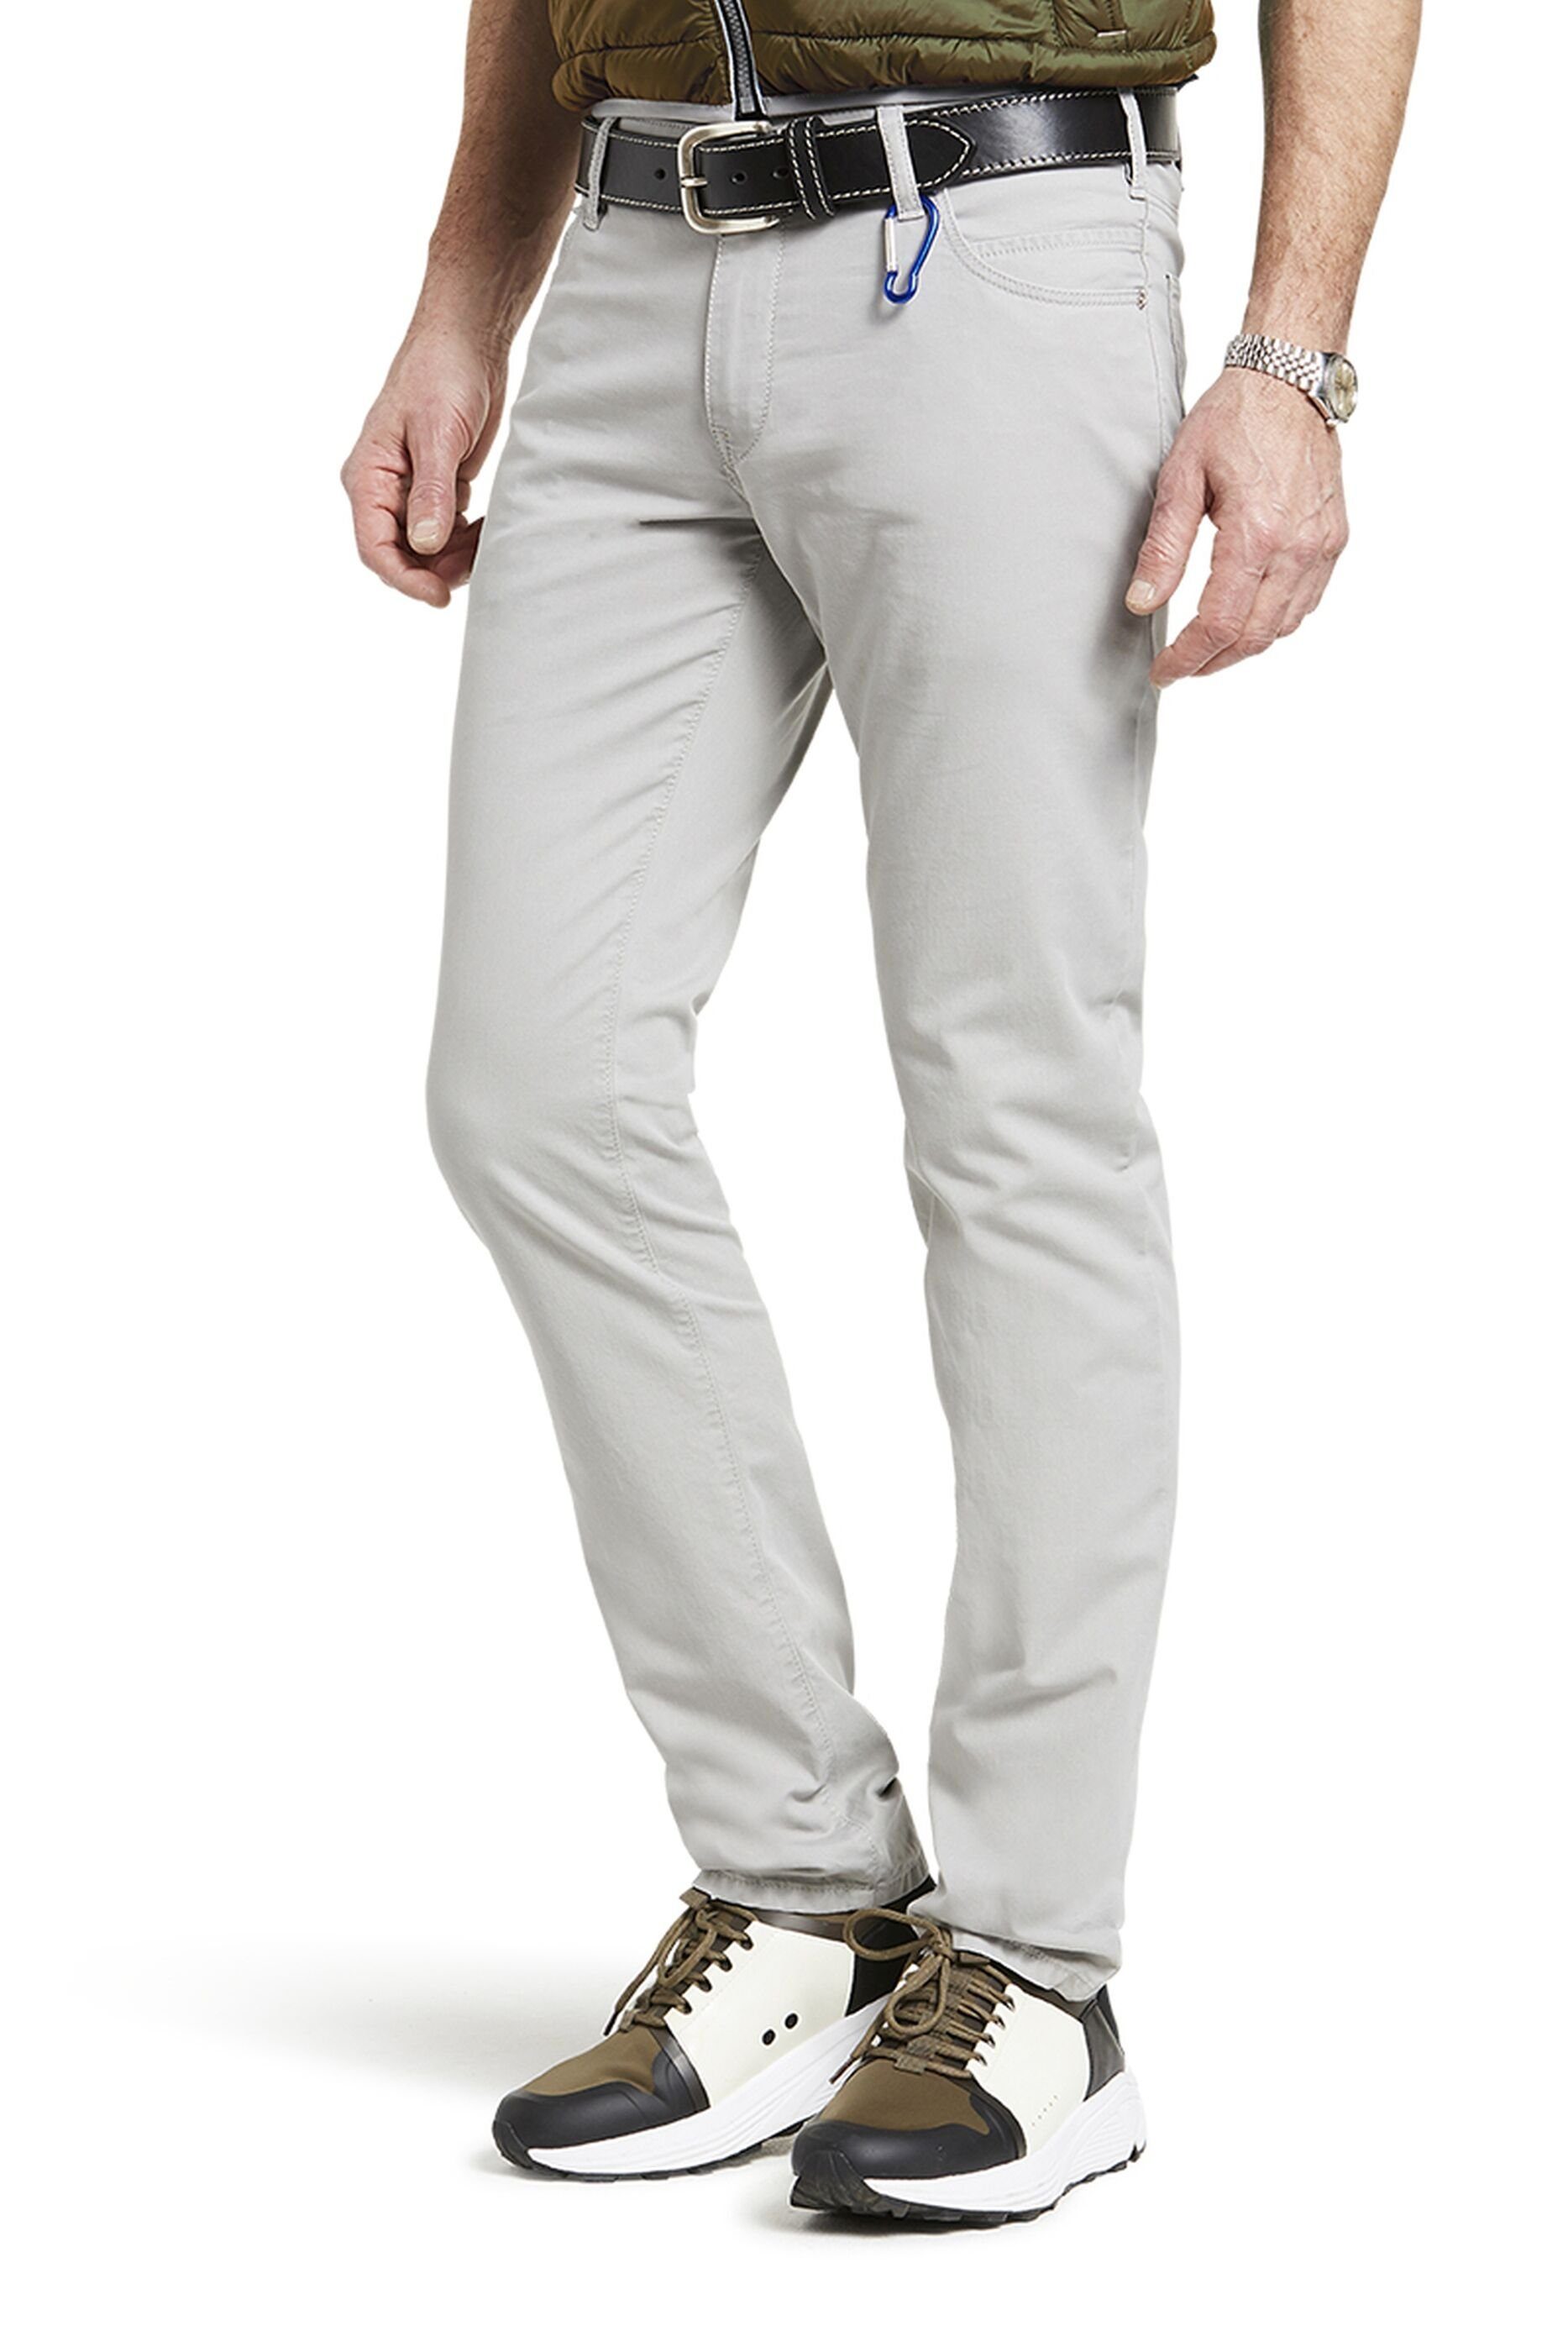 MEYER Slim-fit-Jeans 'M5' aus europäischer Produktion grau